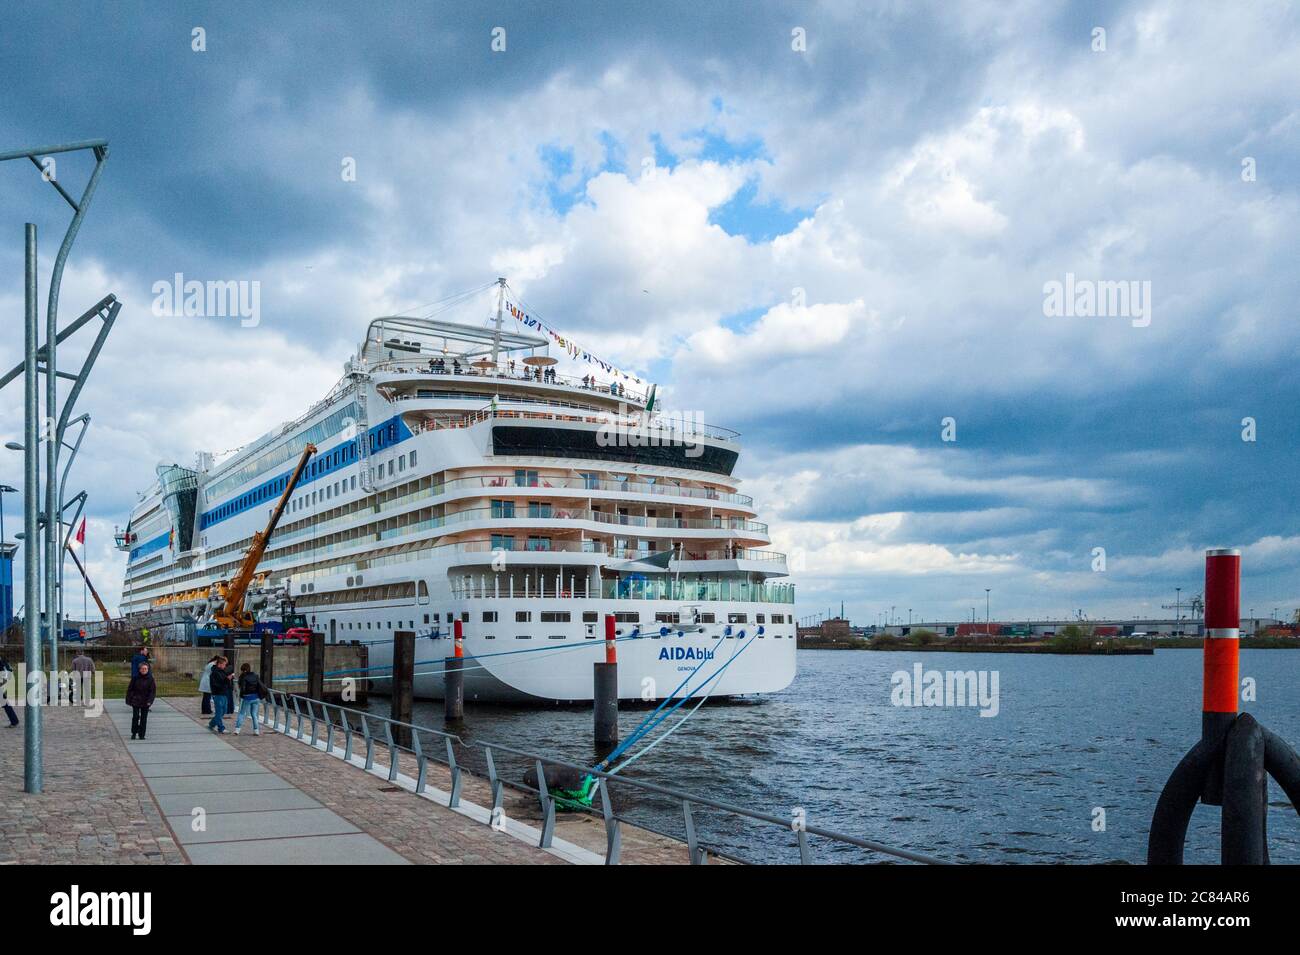 Die AIDA blue am Kreuzfahrtterminal im Hamburger Hafen Foto Stock